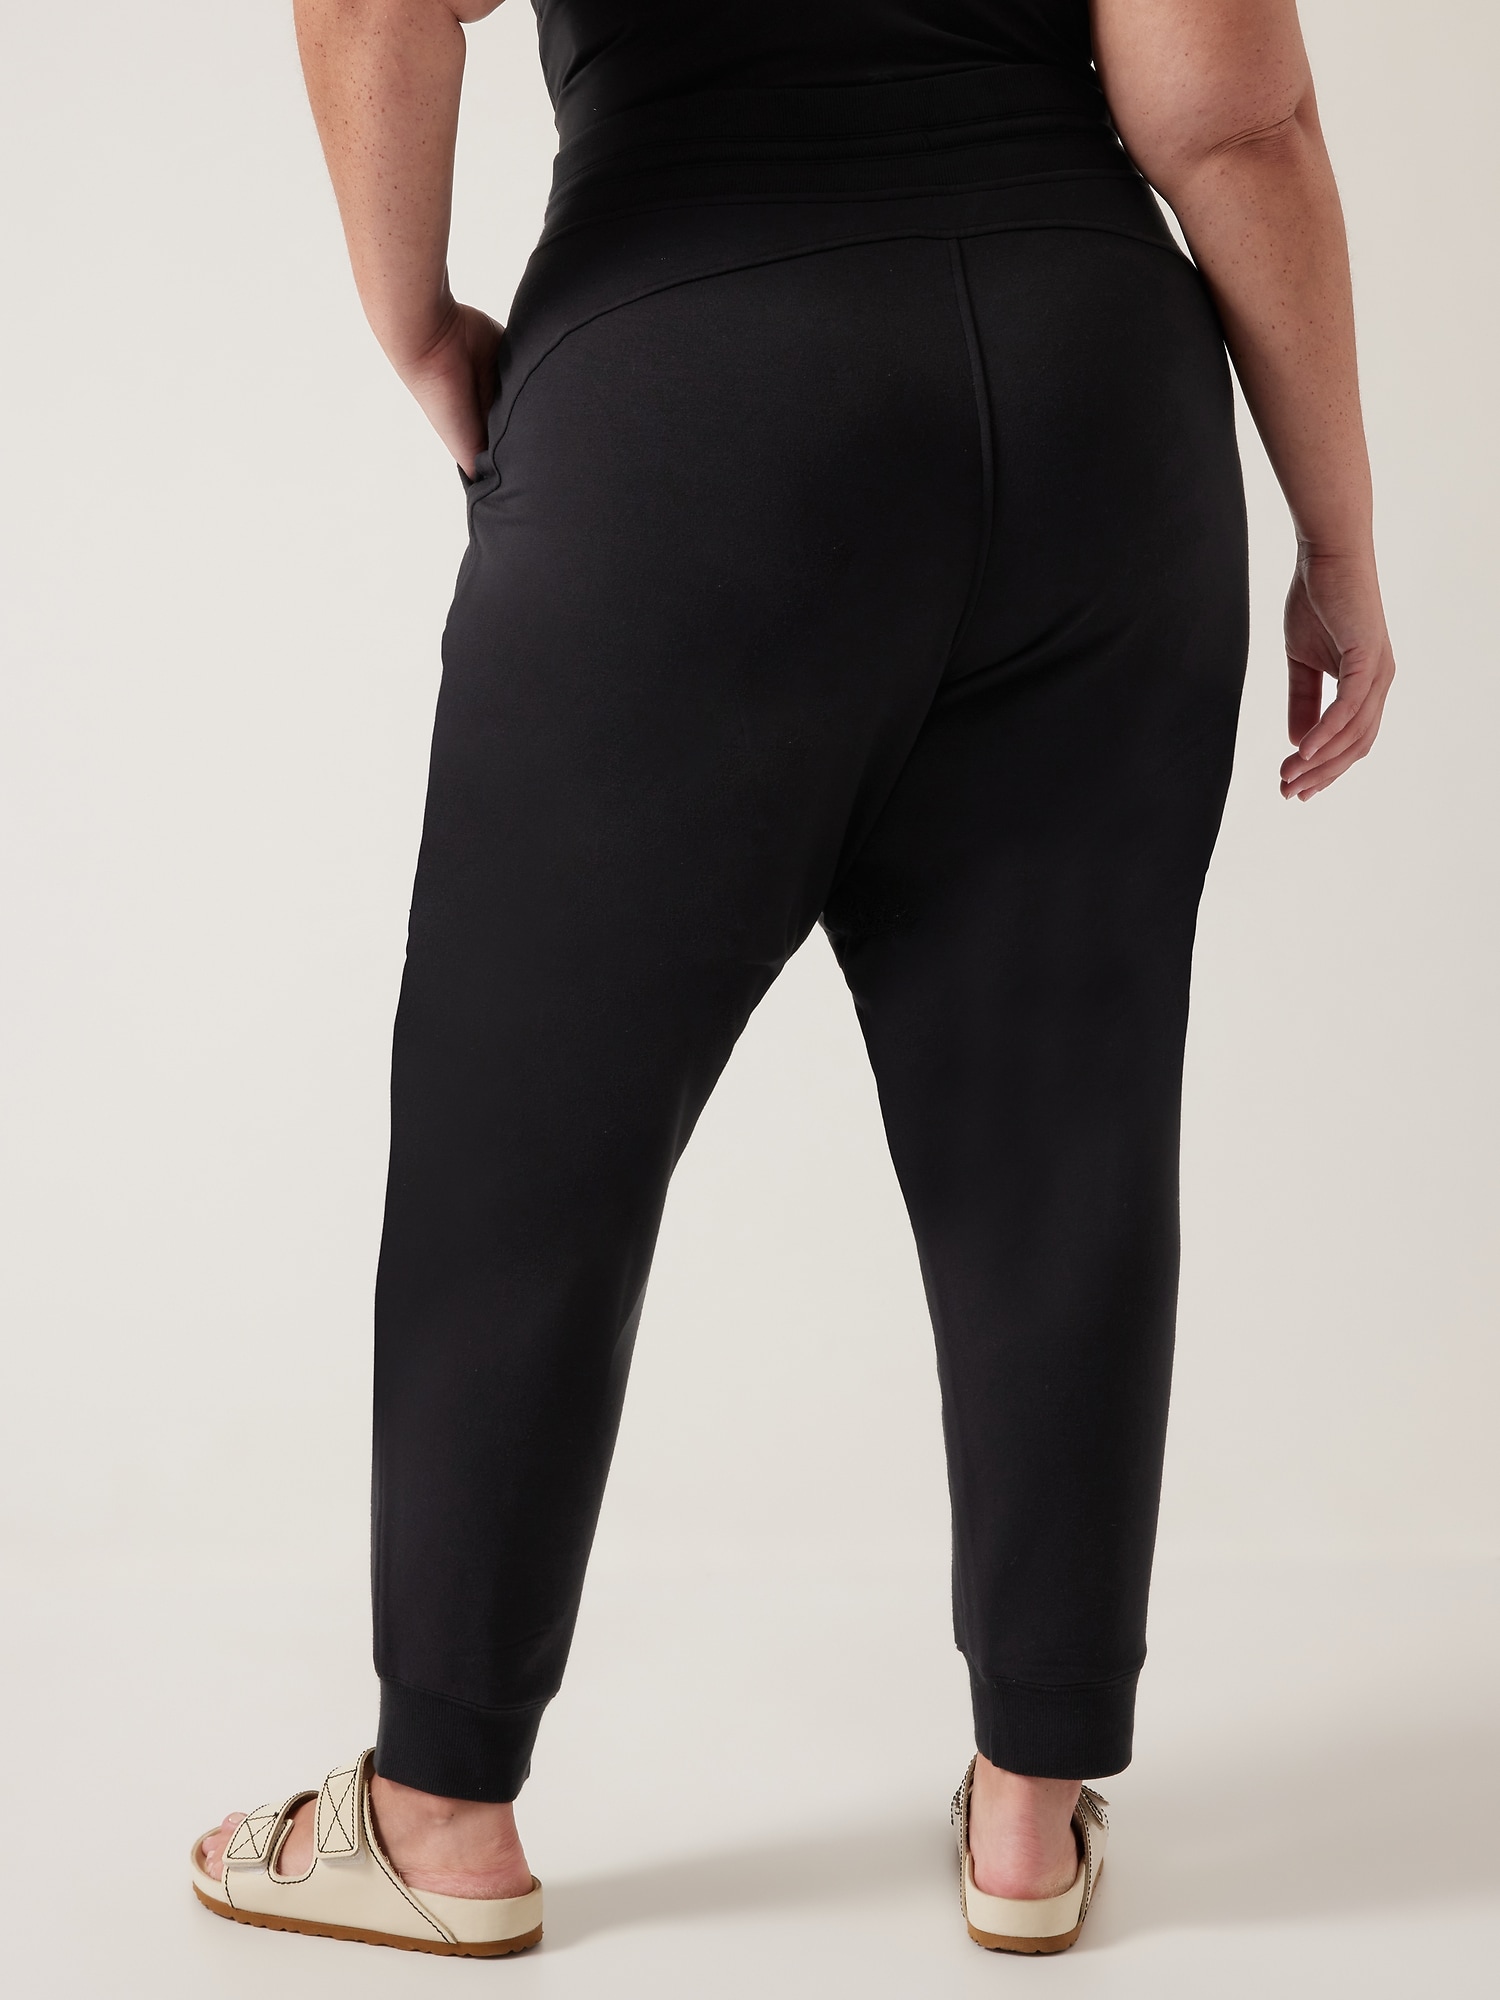 Athleta La Viva Black Drawstring Jogger Pants #964562, Size 10